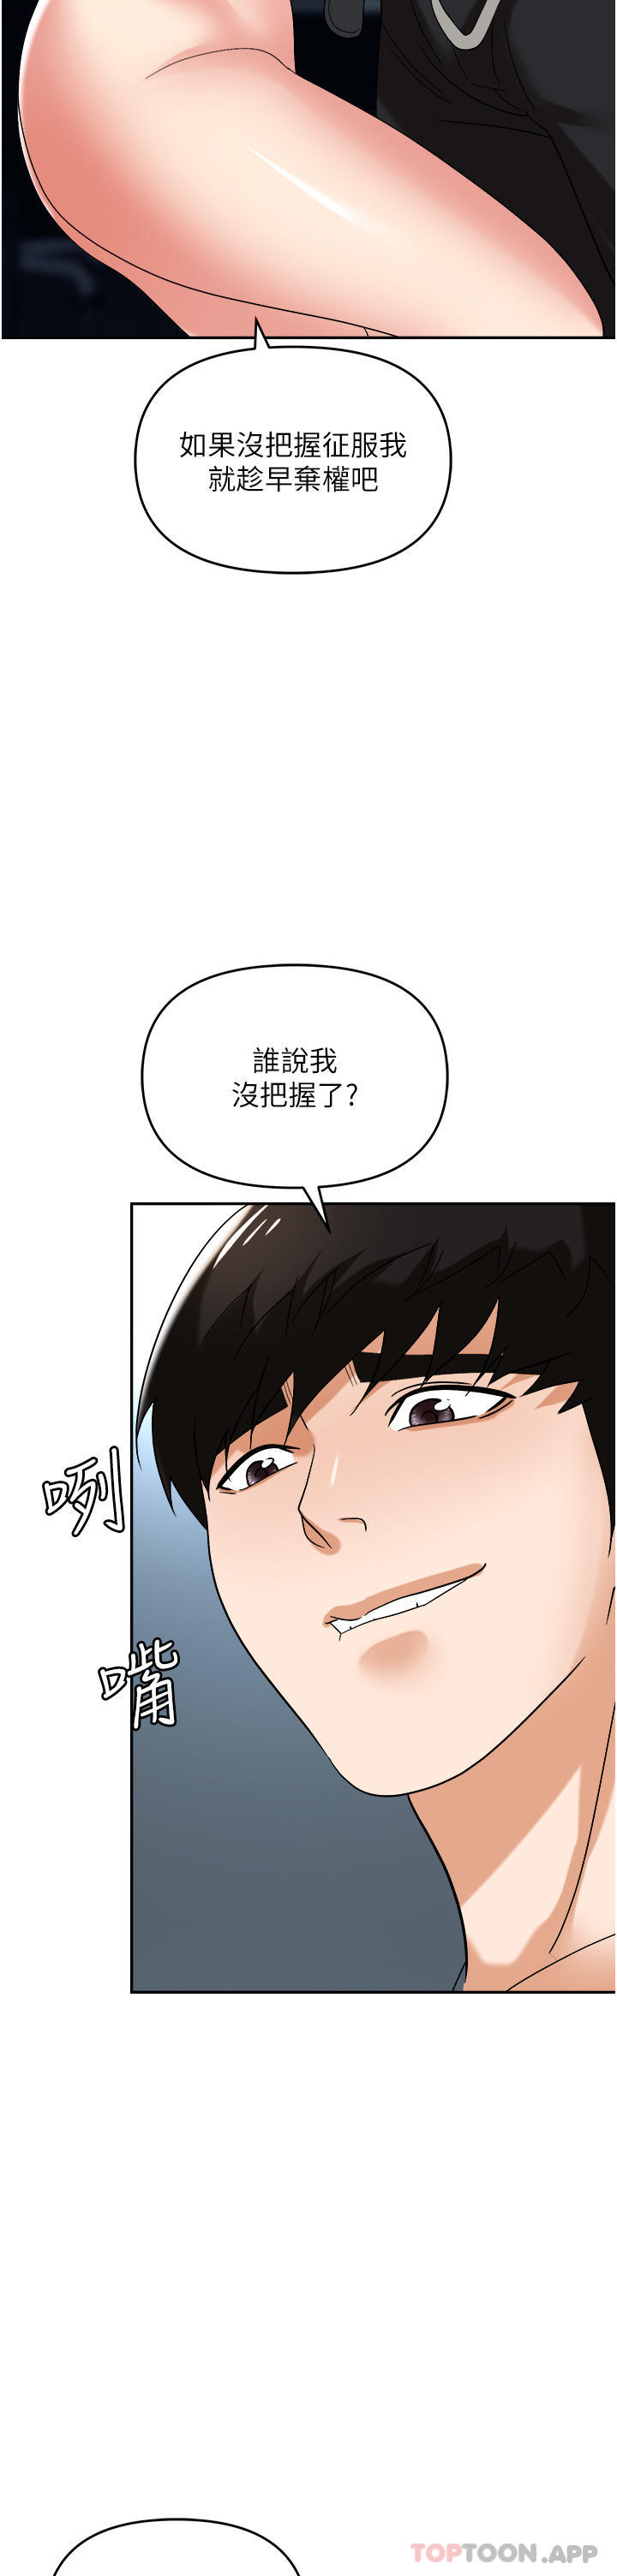 韩国污漫画 職場陷阱 第39话-让你体验真正的「快乐」 44